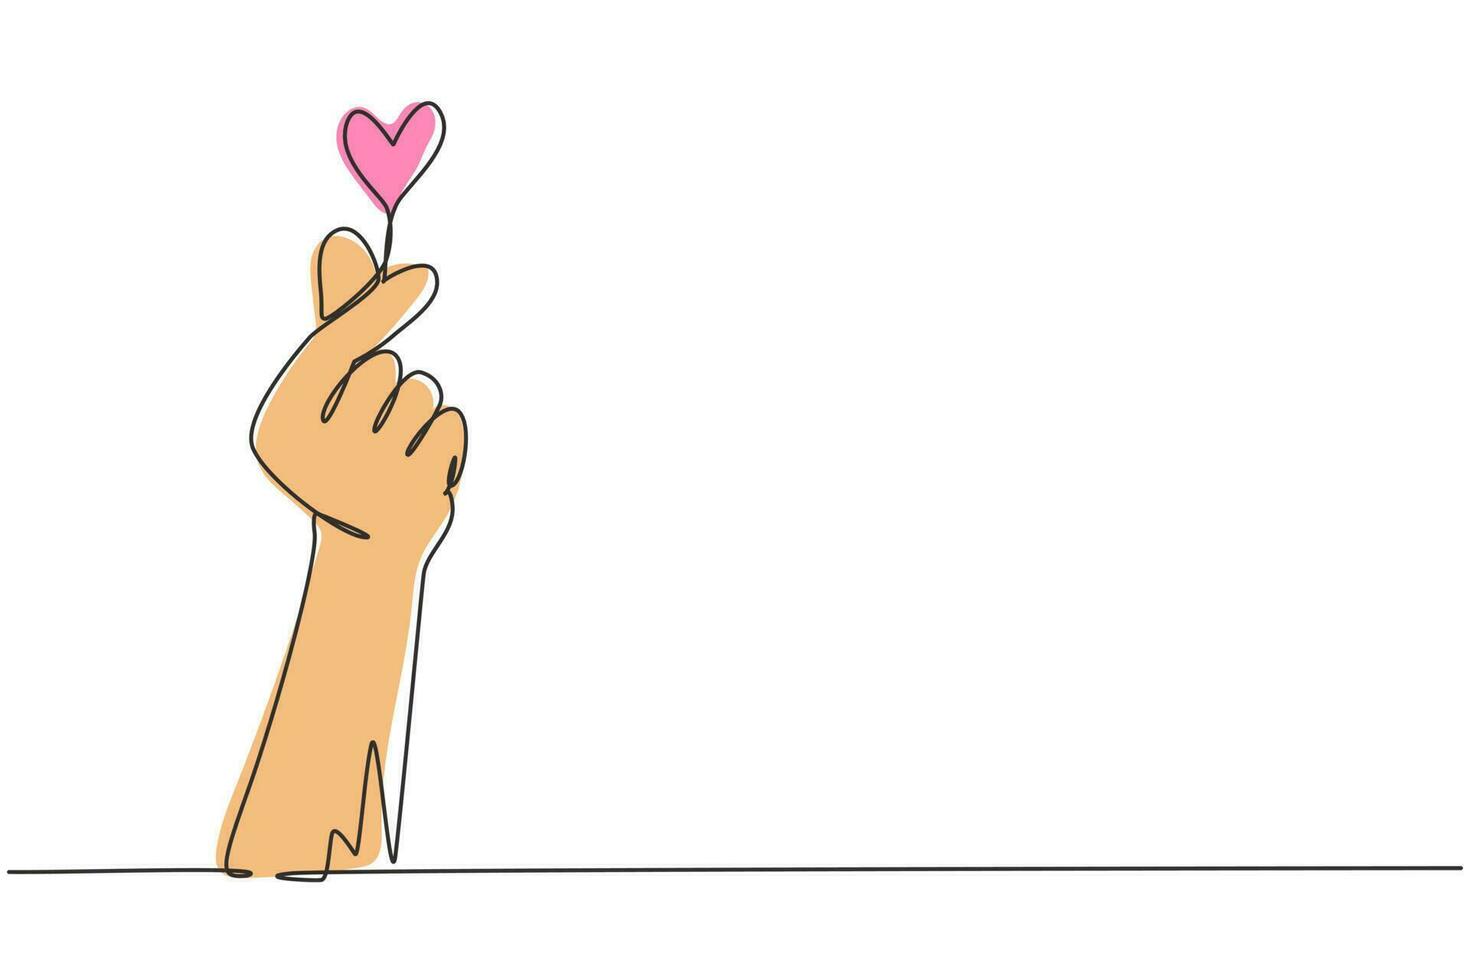 signo de corazón coreano de dibujo de línea continua única. símbolo de amor de dedo. te amo gesto de la mano. amor propio. diseño de corazón coreano. amor con gestos con las manos. Ilustración de vector de diseño gráfico de dibujo de una línea